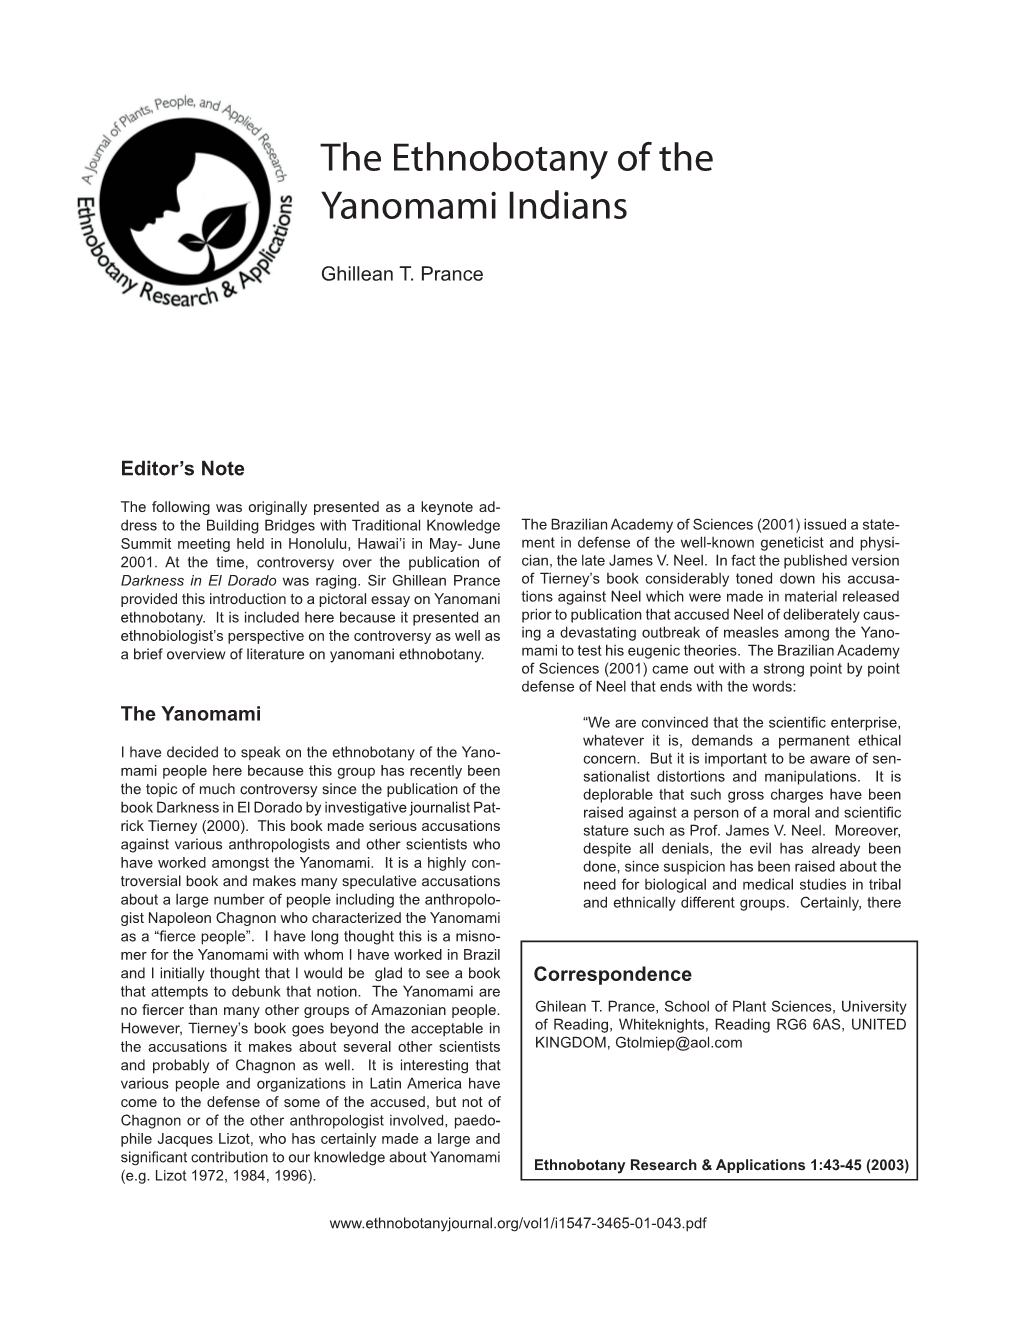 The Ethnobotany of the Yanomami Indians